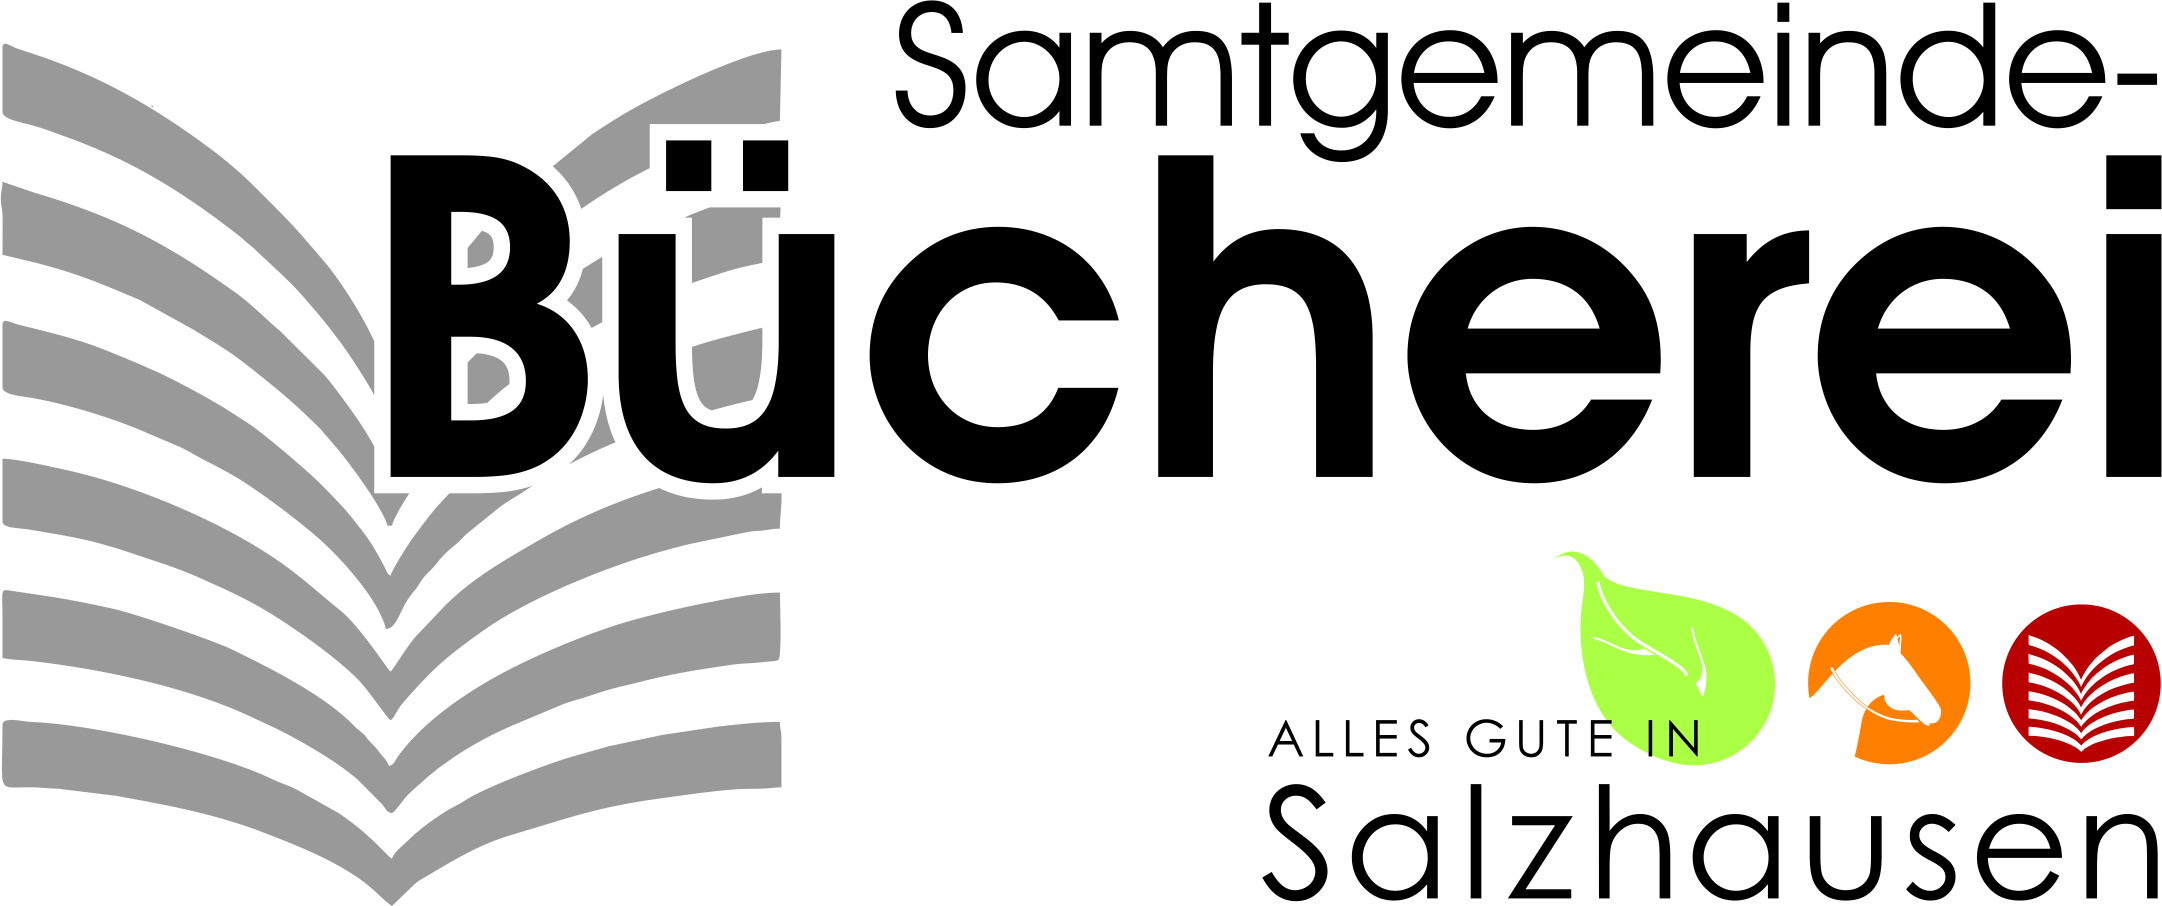 Logo Samtgemeindebücherei